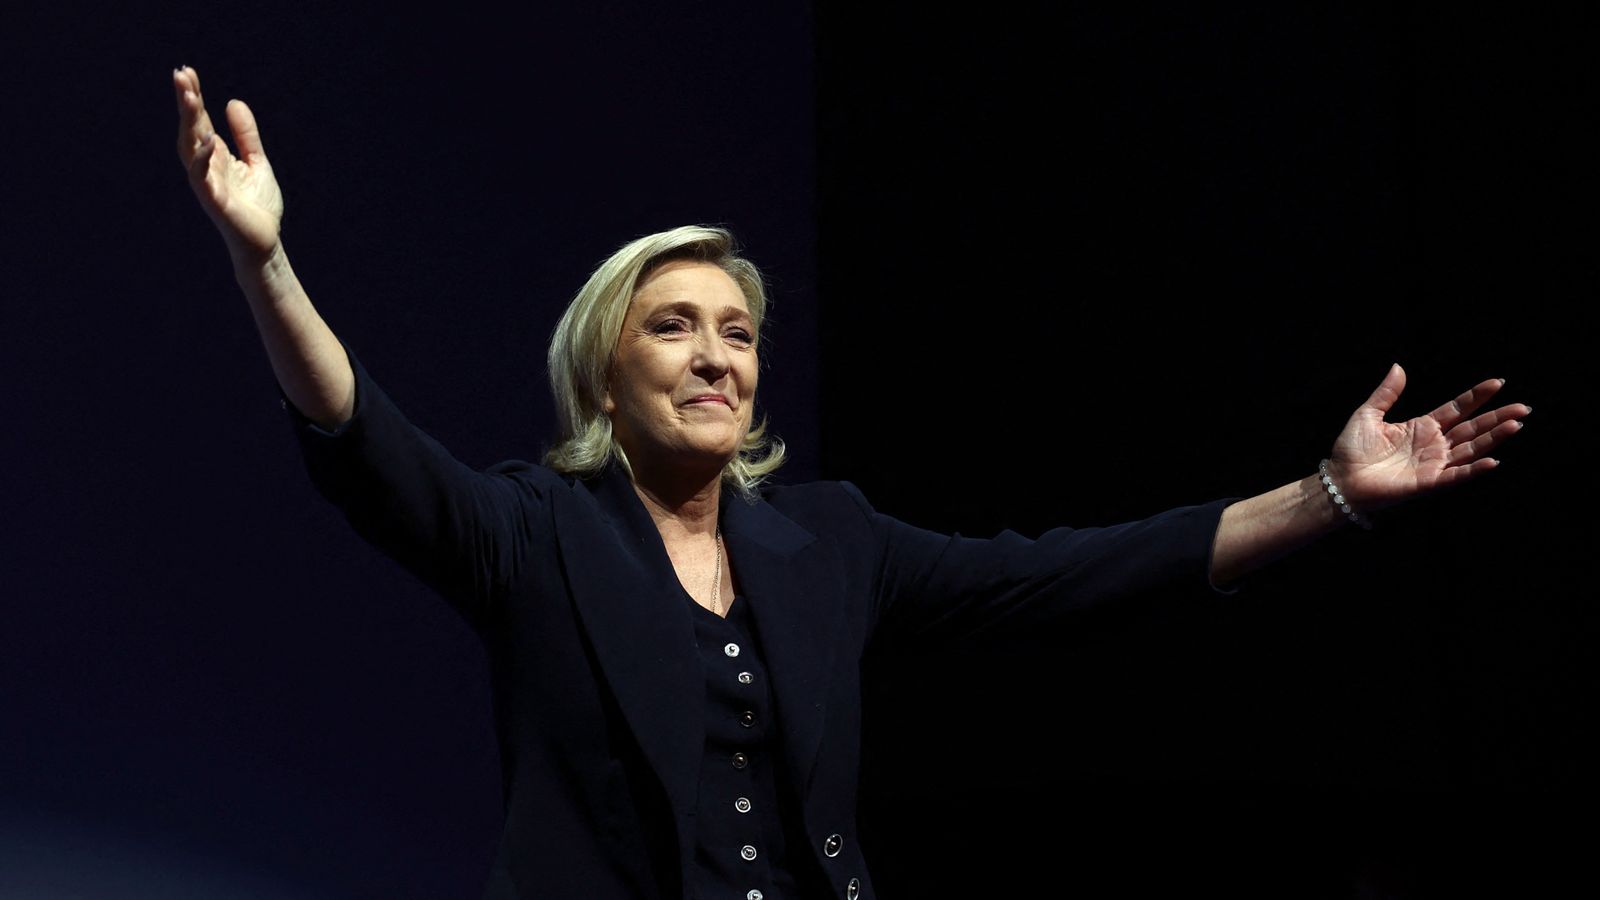 Le Rassemblement national d’extrême droite de Marine Le Pen arrive en tête du premier tour des élections françaises |  Nouvelles du monde